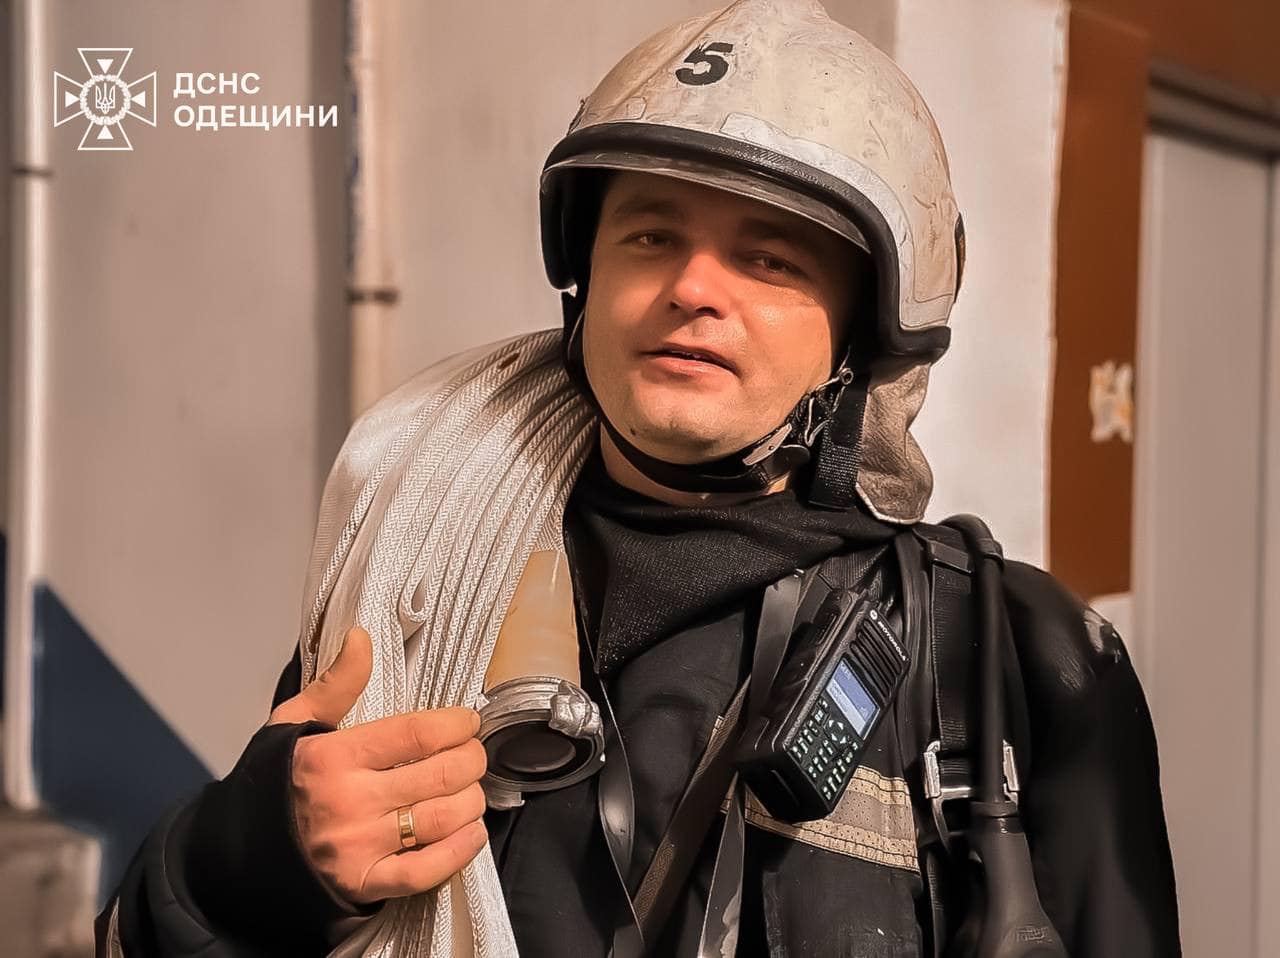 В Одессе с многоэтажки пришлось эвакуировать около 15 человек - подробности